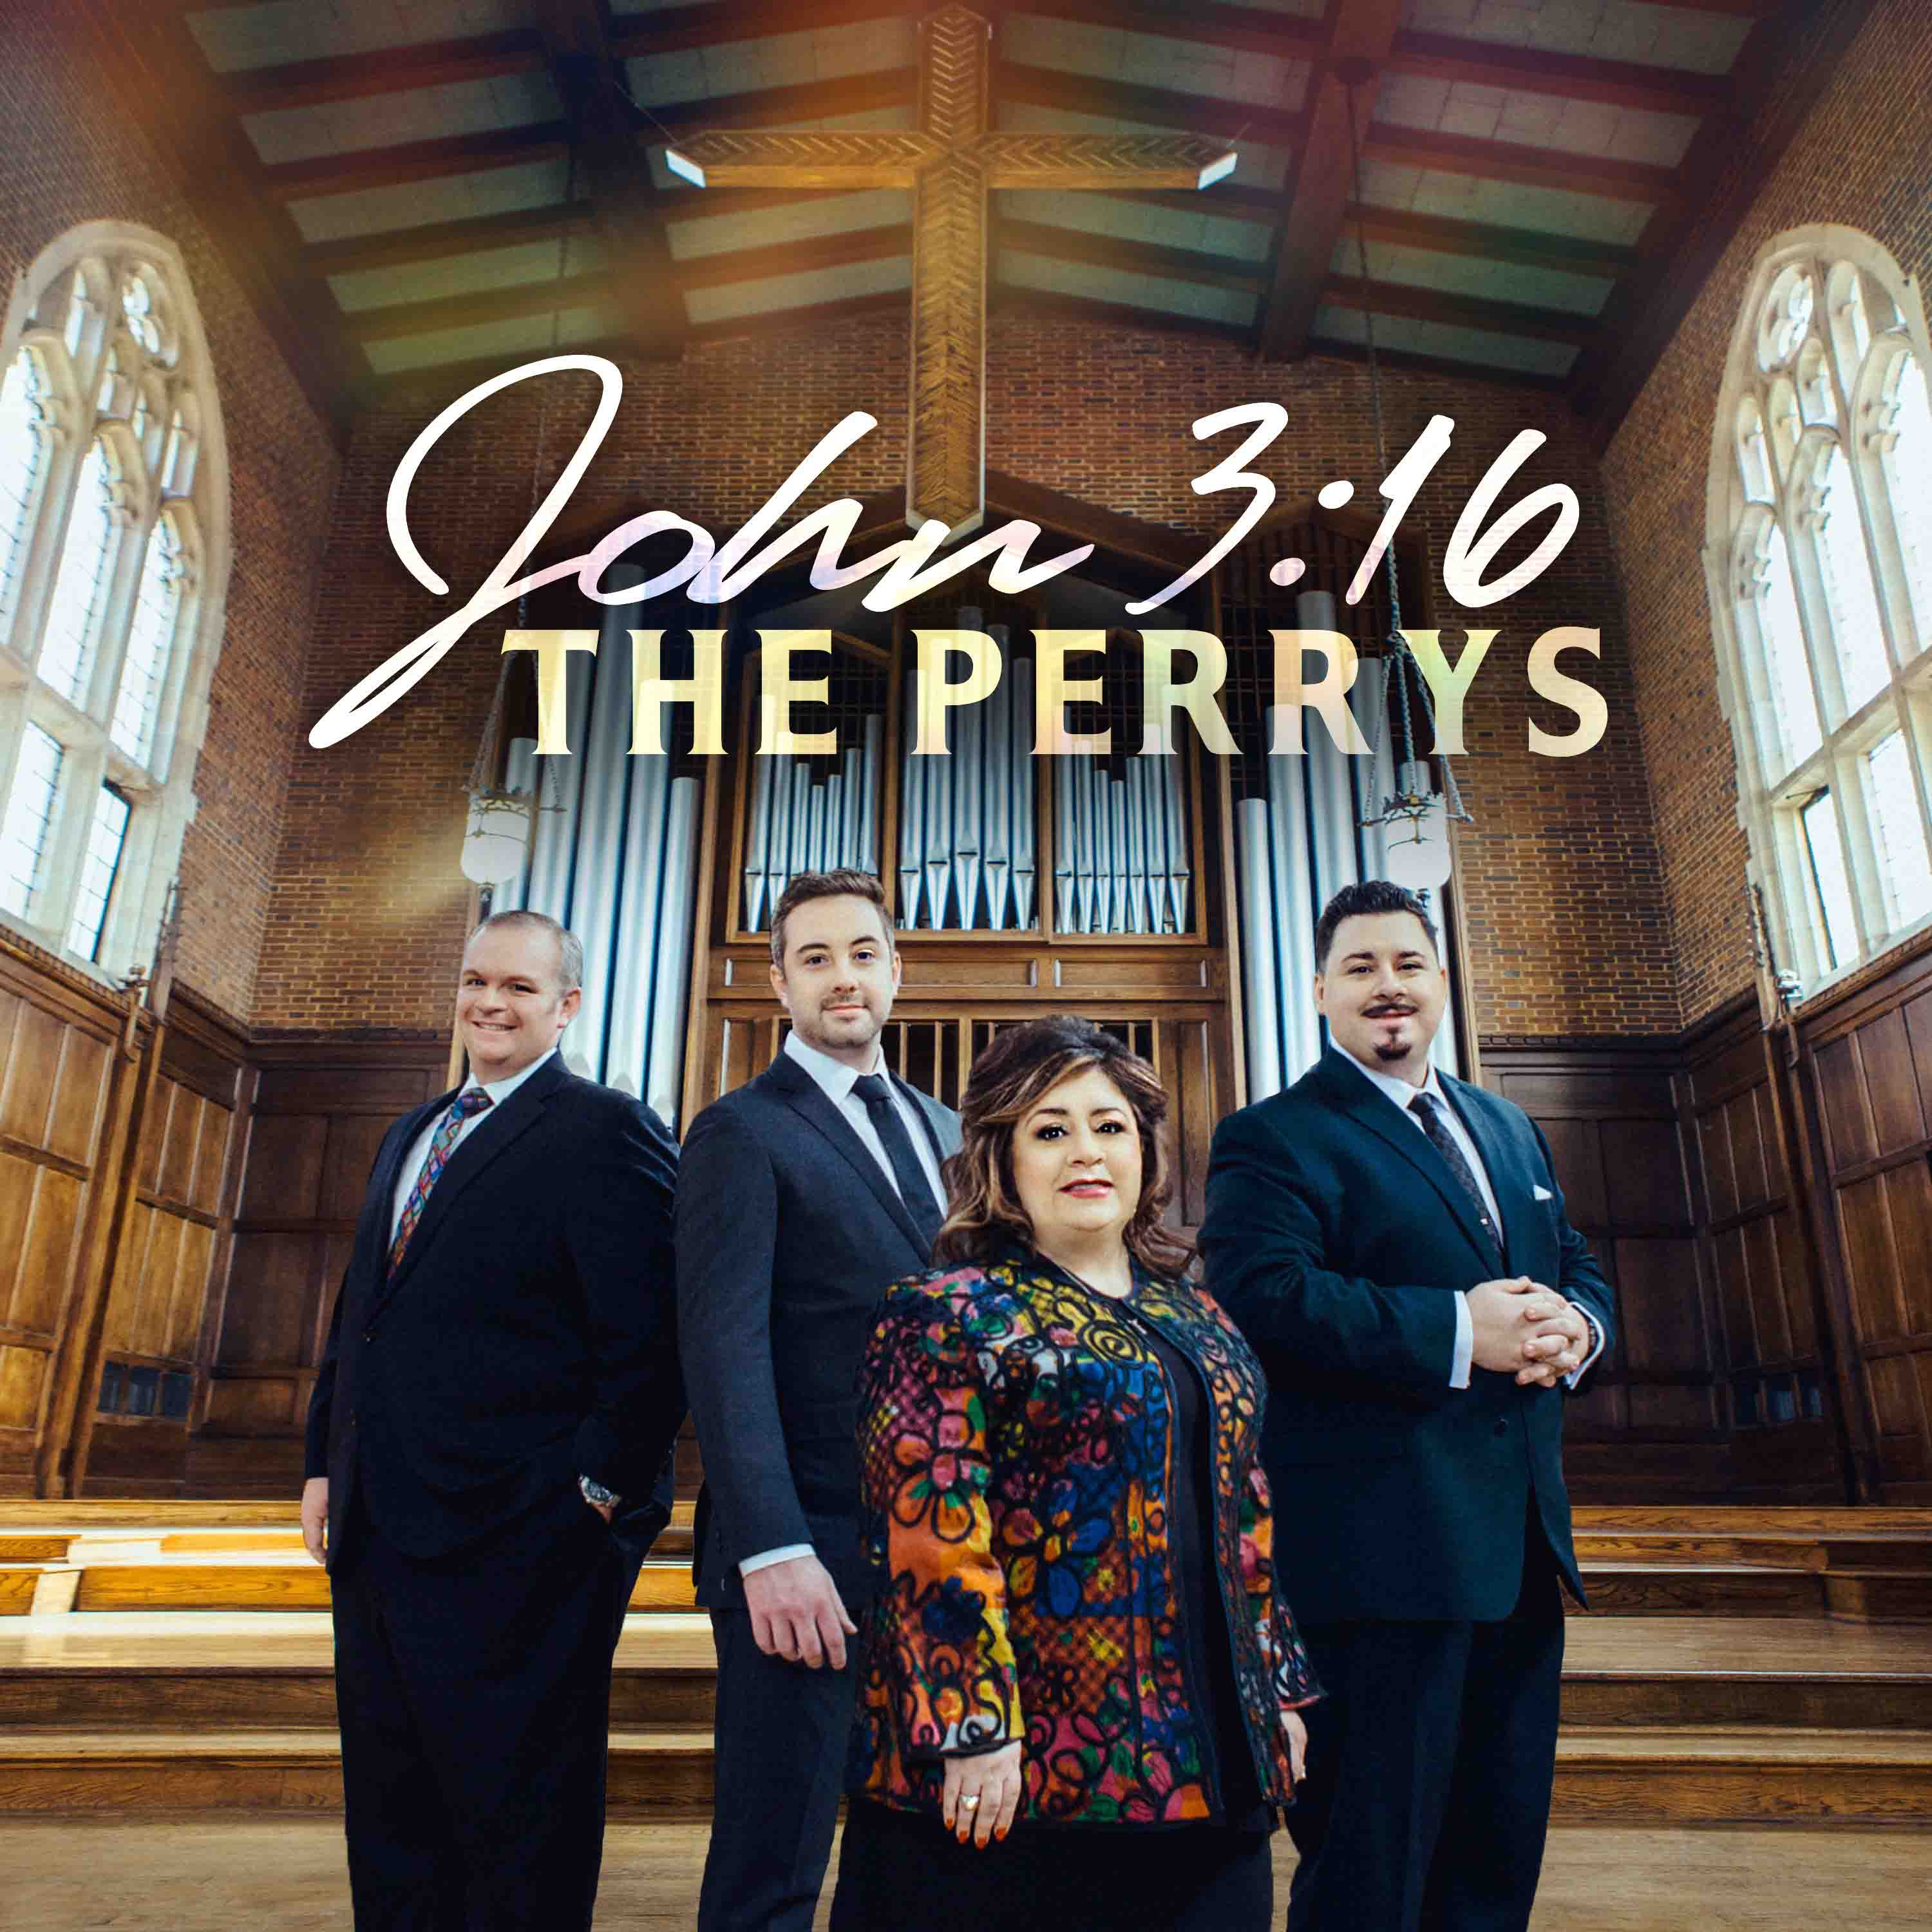 The Perrys | John 3:16